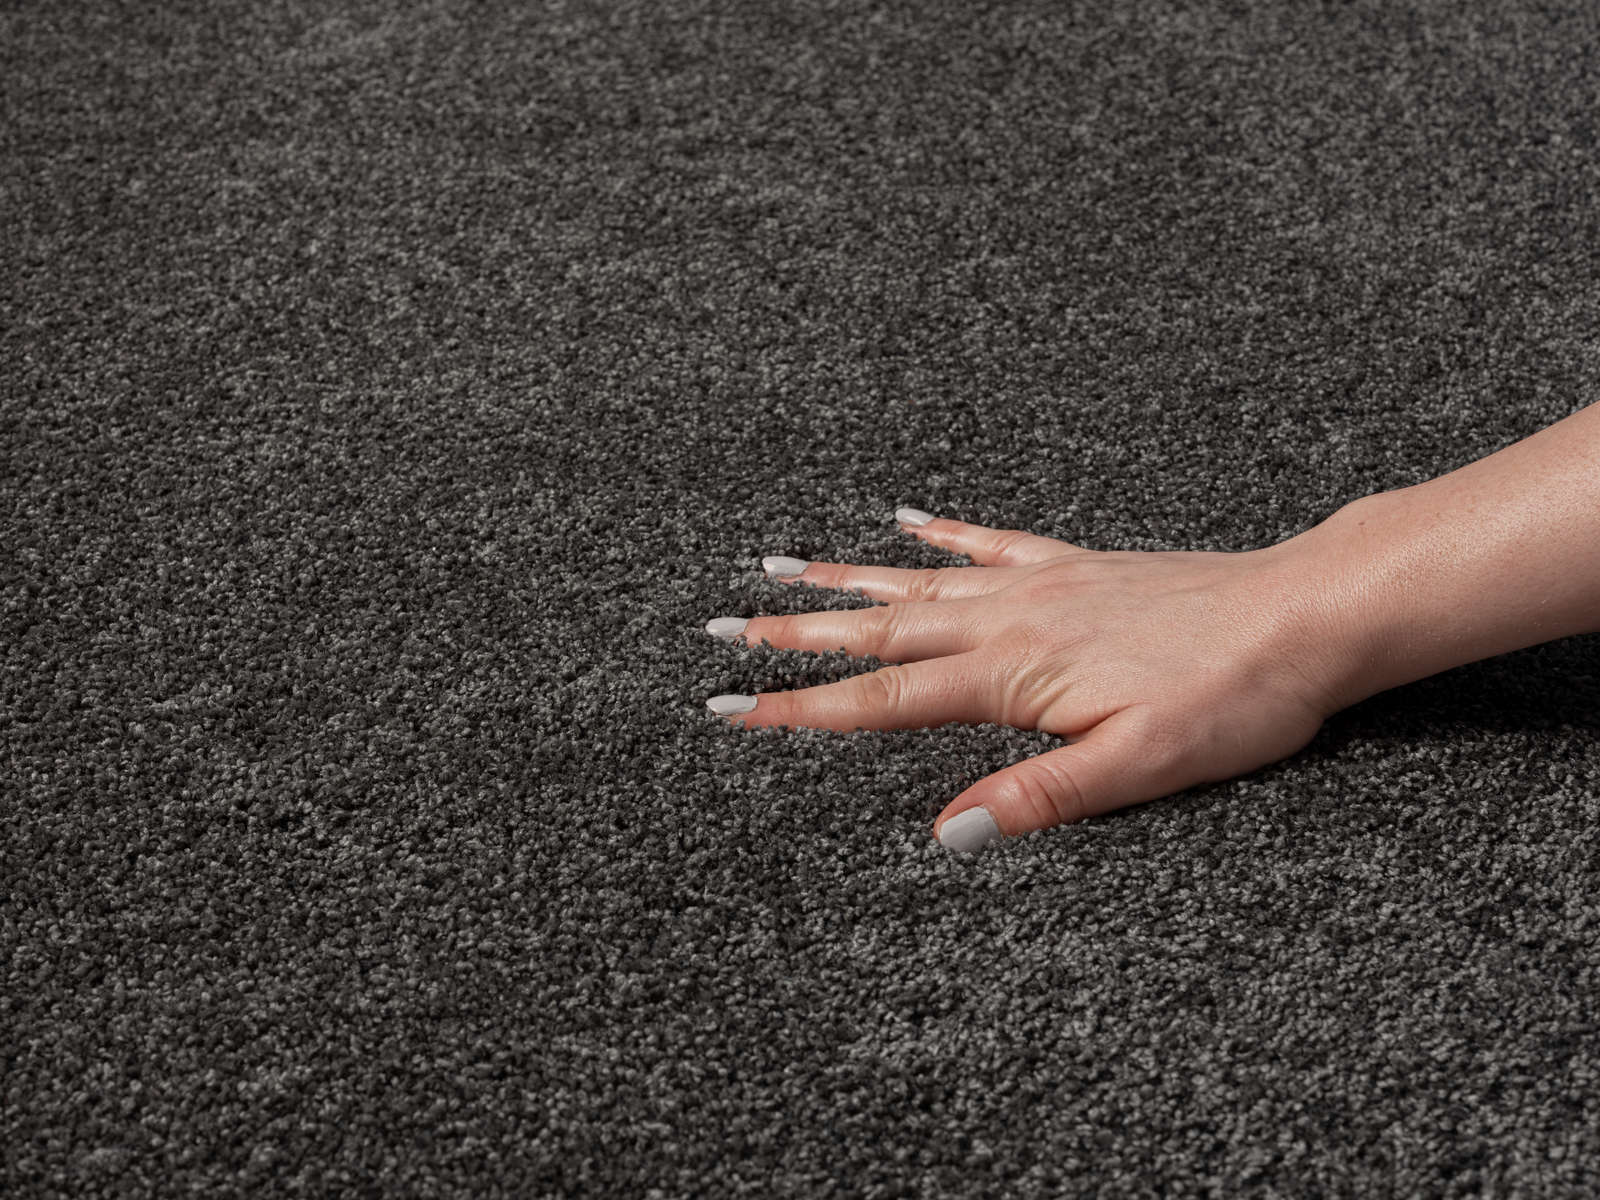             Zacht kortpolig tapijt in antraciet - 290 x 200 cm
        